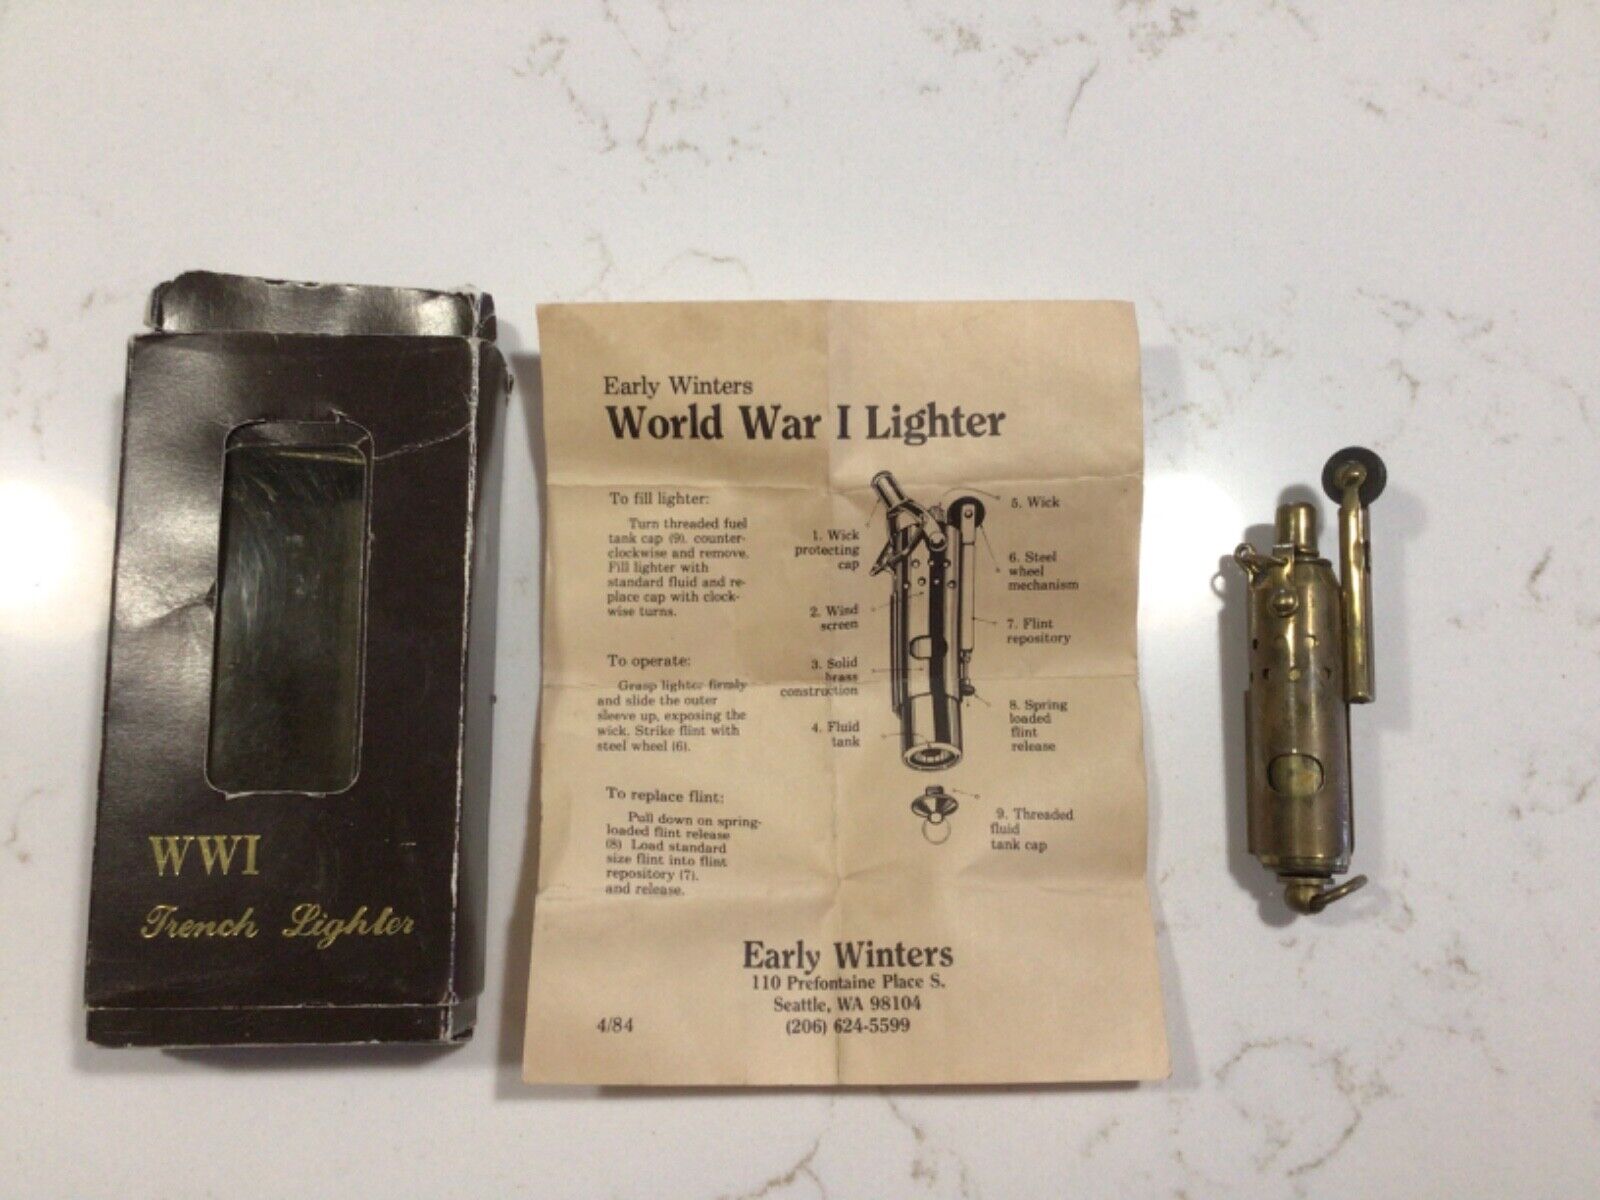 WW1 French lighter